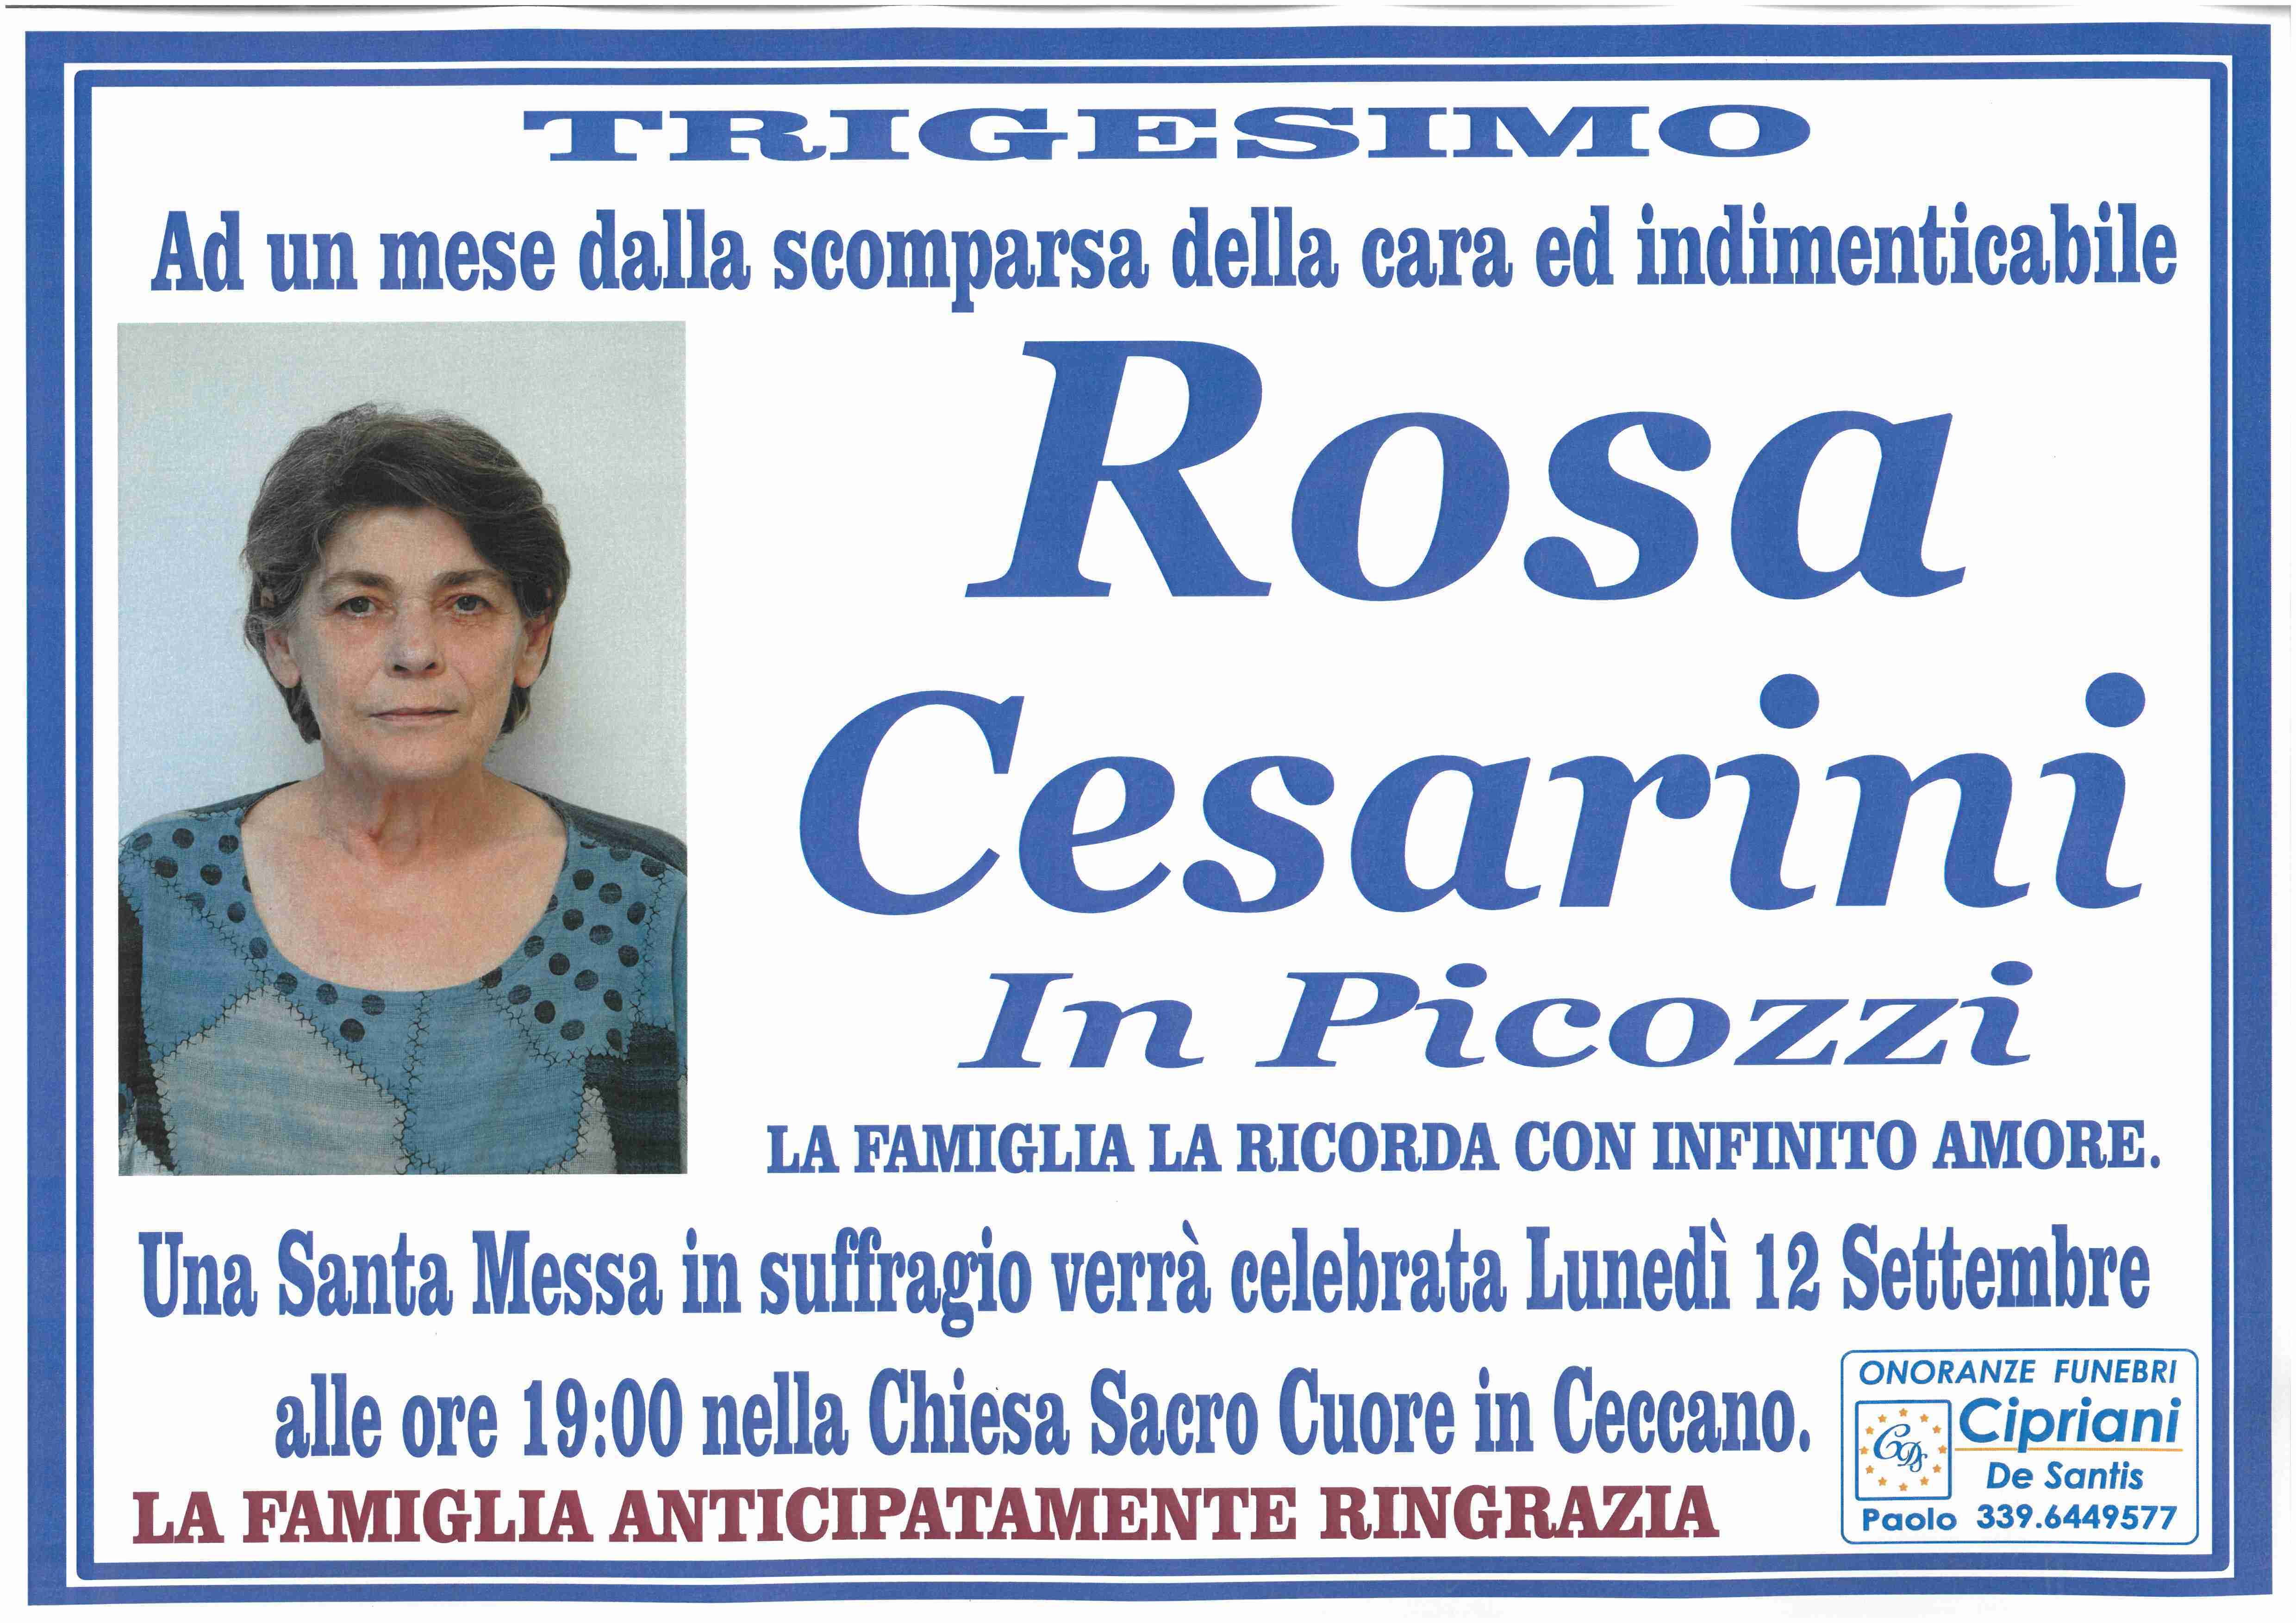 Rosa Cesarini